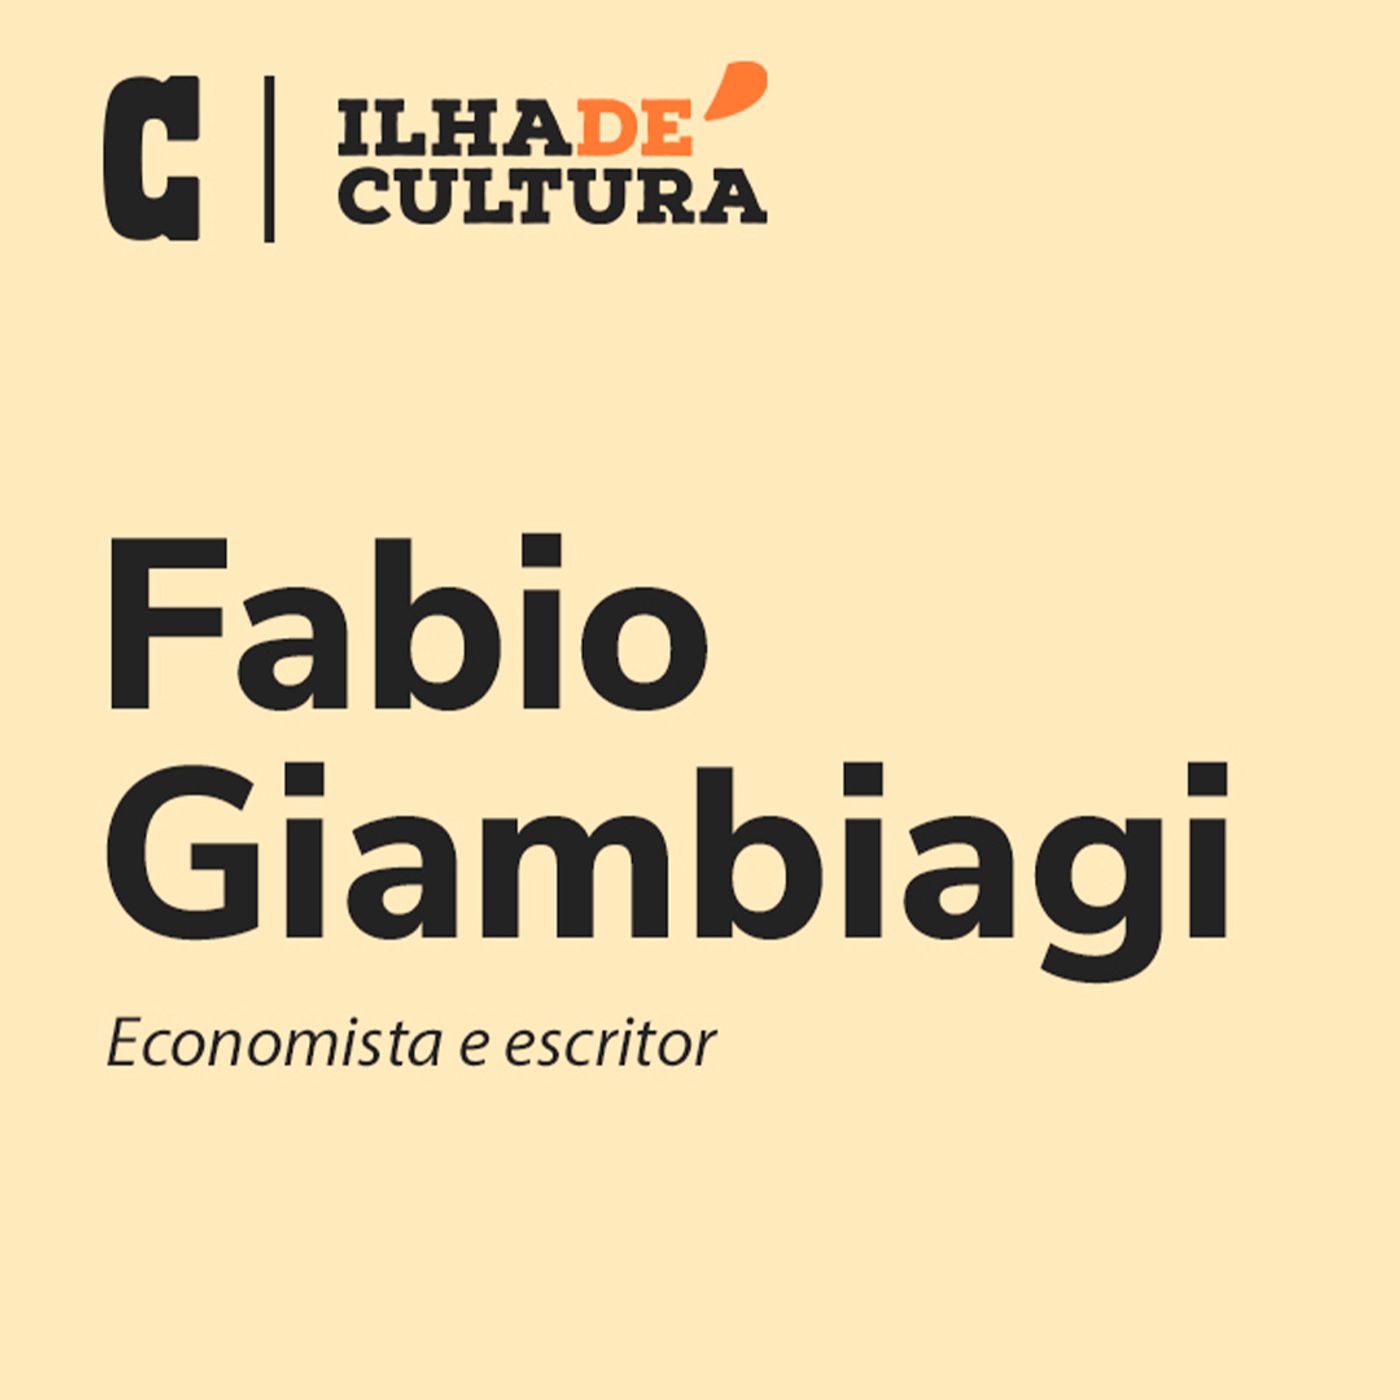 Uma educação argentina e brasileira, com Fabio Giambiagi | Ilha de Cultura por Carlos Graieb